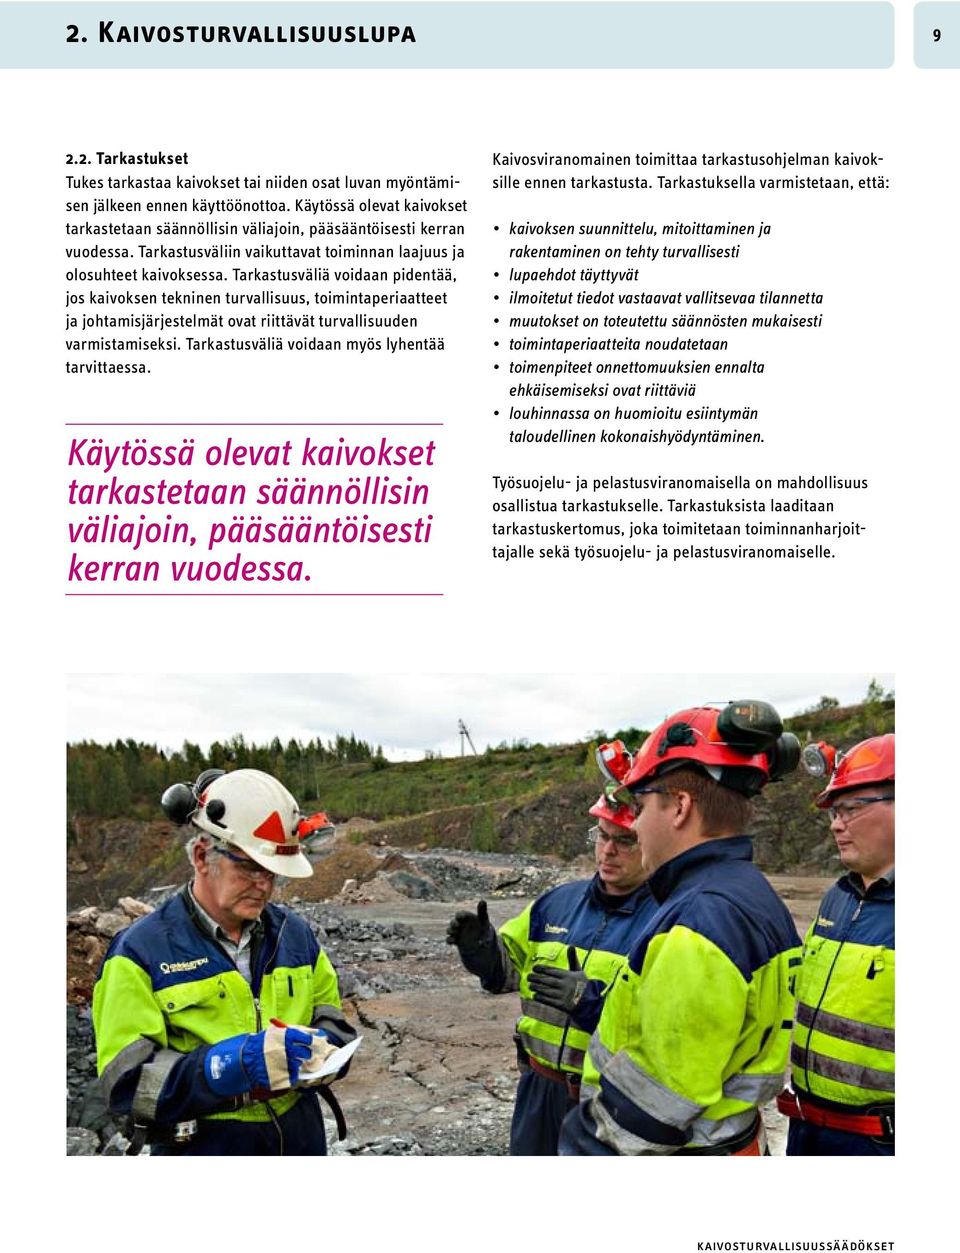 Tarkastusväliä voidaan pidentää, jos kaivoksen tekninen turvallisuus, toimintaperiaatteet ja johtamisjärjestelmät ovat riittävät turvallisuuden varmistamiseksi.